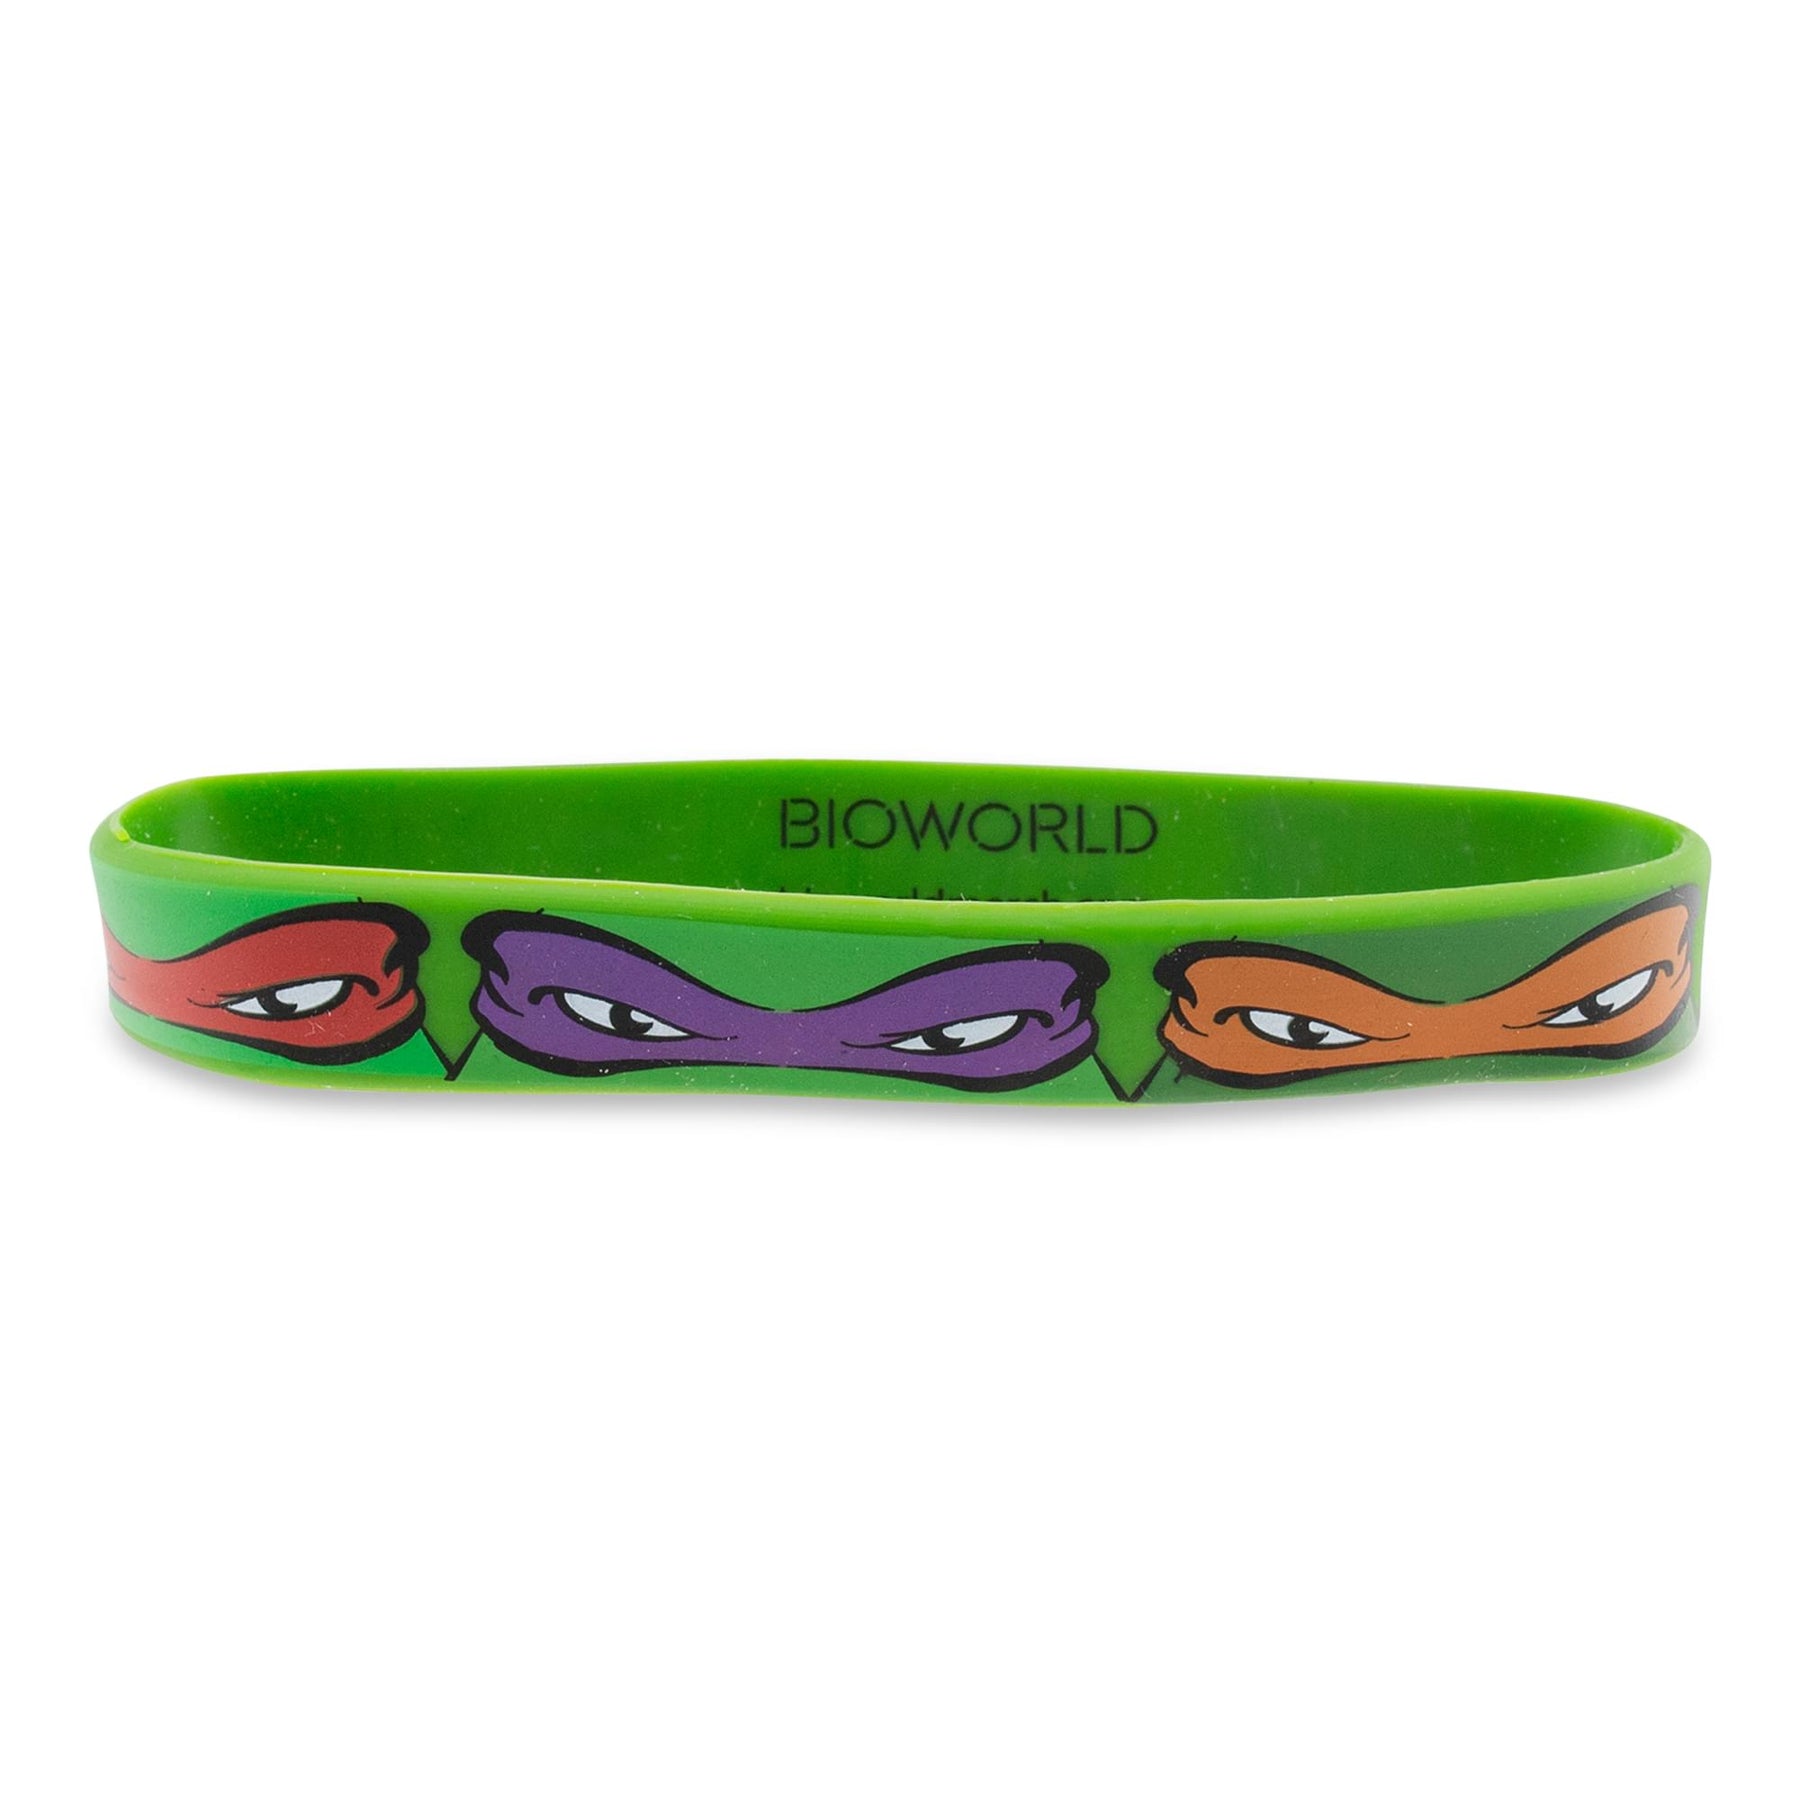 Teenage Mutant Ninja Turtles "Bros 4 Life" Green Rubber Bracelet 2-Pack